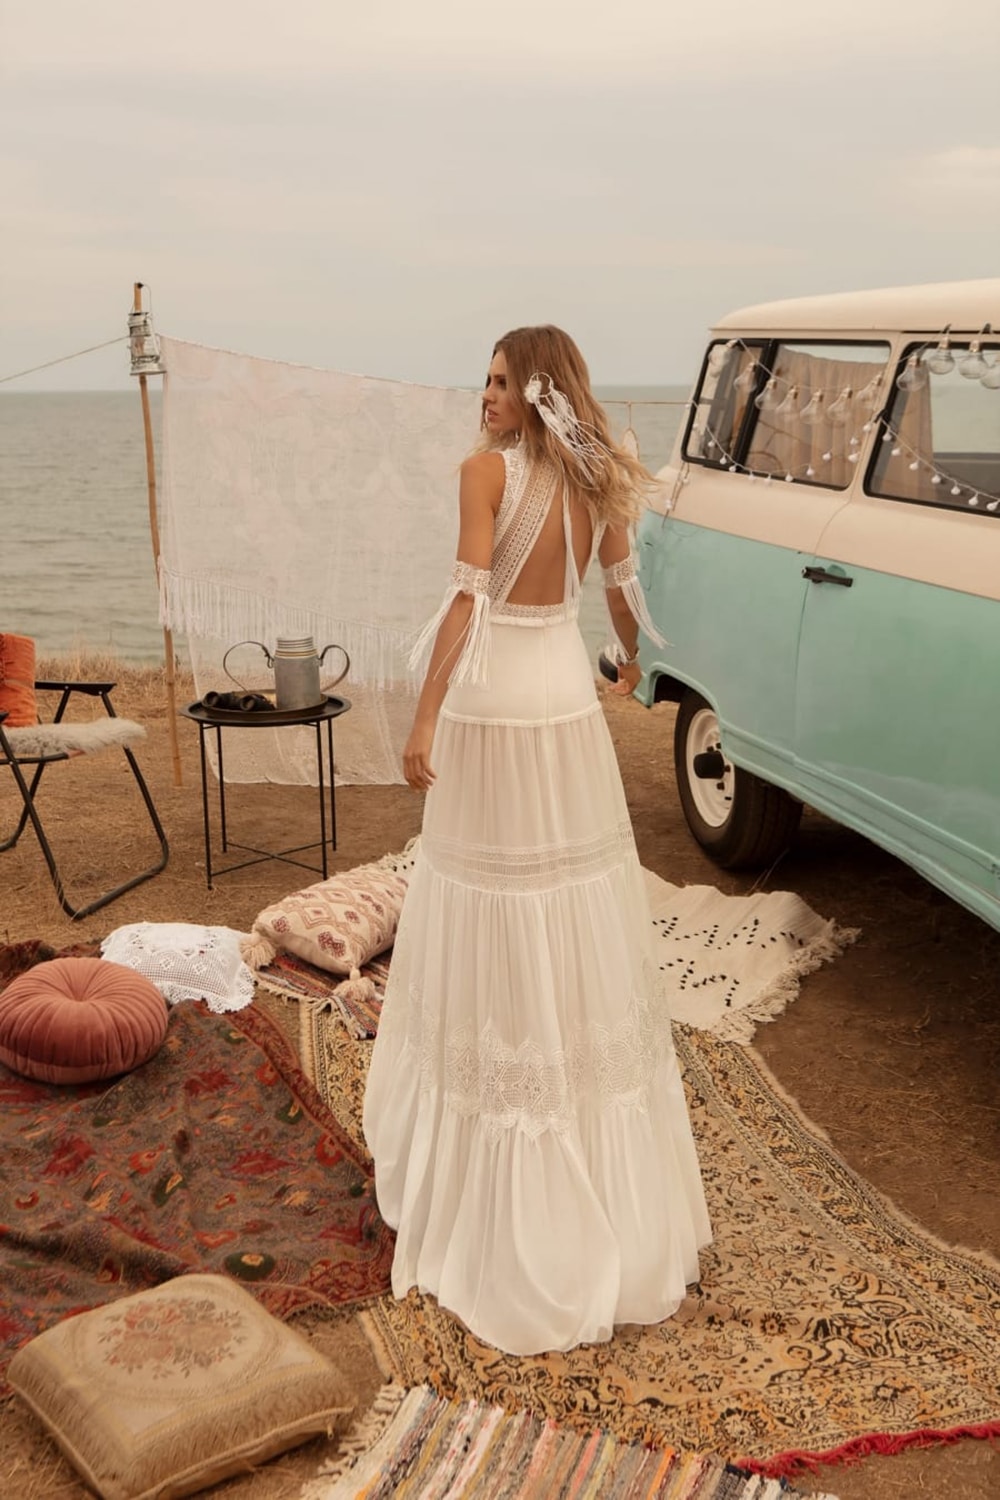 Minder Mevrouw Samenwerking Bohemian trouwjurk kopen: vind de jurk die bij jou past